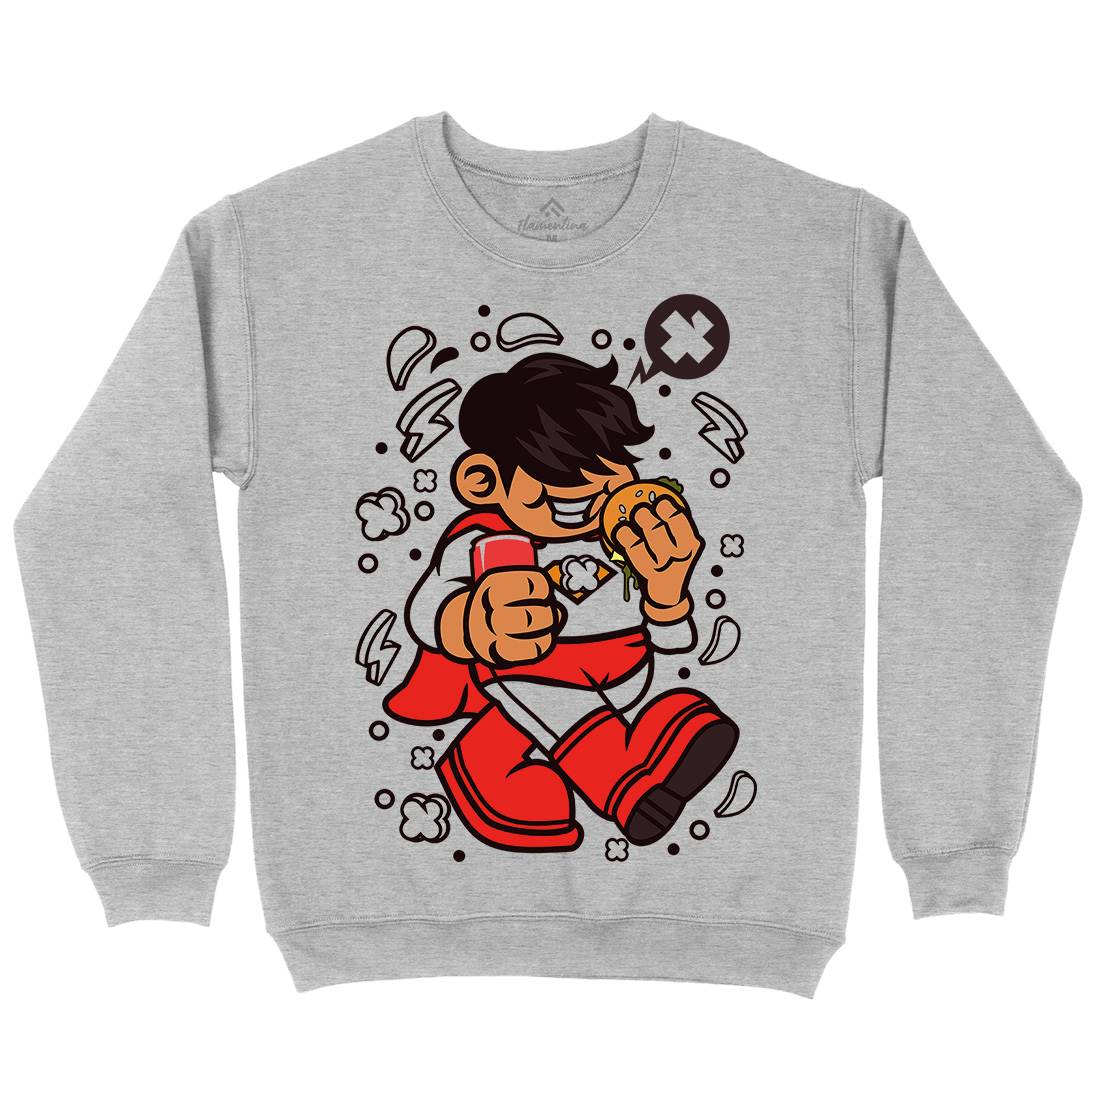 Superhero Super Kid Kids Crew Neck Sweatshirt Geek C267